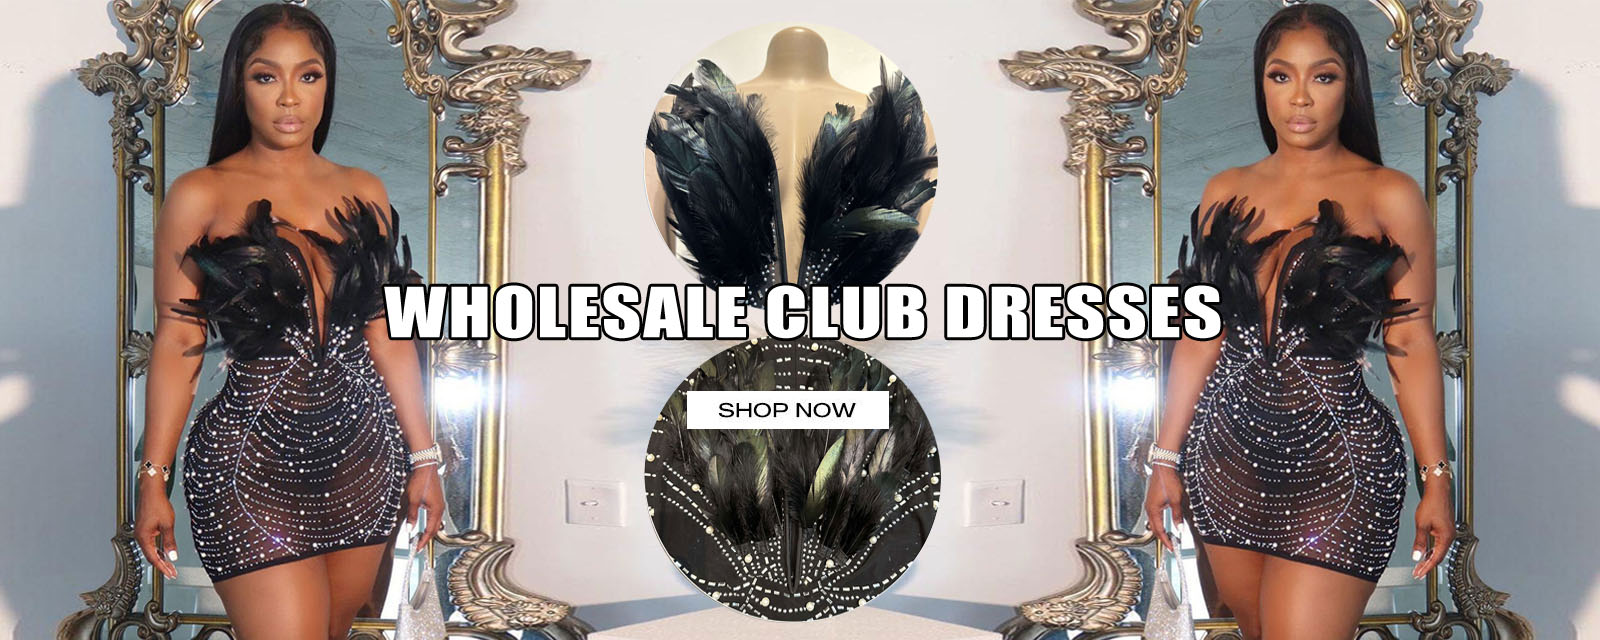 wholesale clubwear